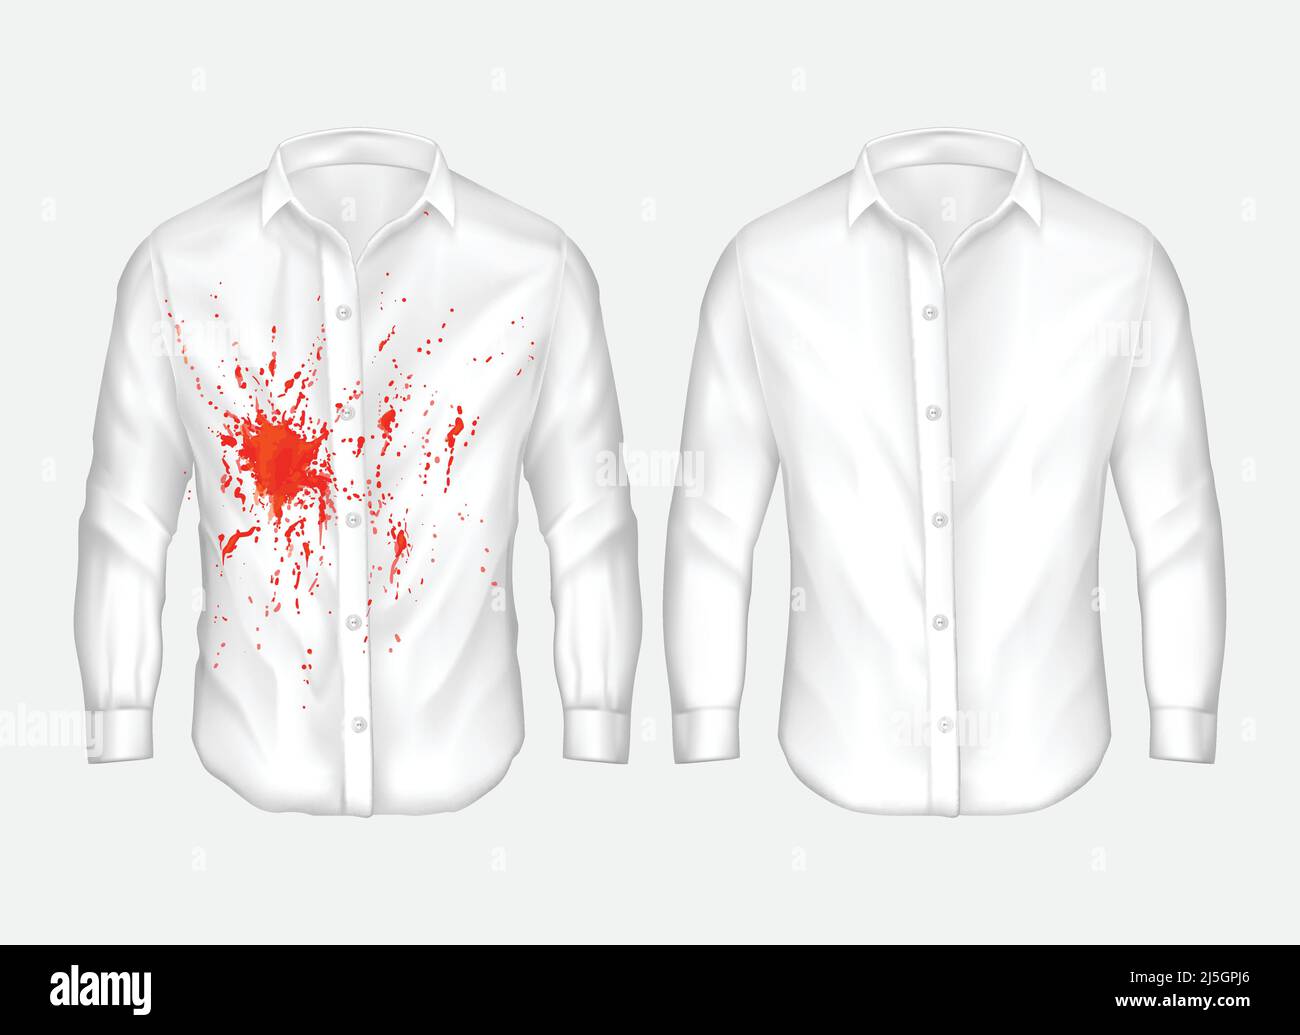 Set di illustrazioni vettoriali di camicia uomo bianca con macchia rossa da ketchup, sangue e pulito, prima e dopo lavaggio a secco, isolato su sfondo bianco Illustrazione Vettoriale